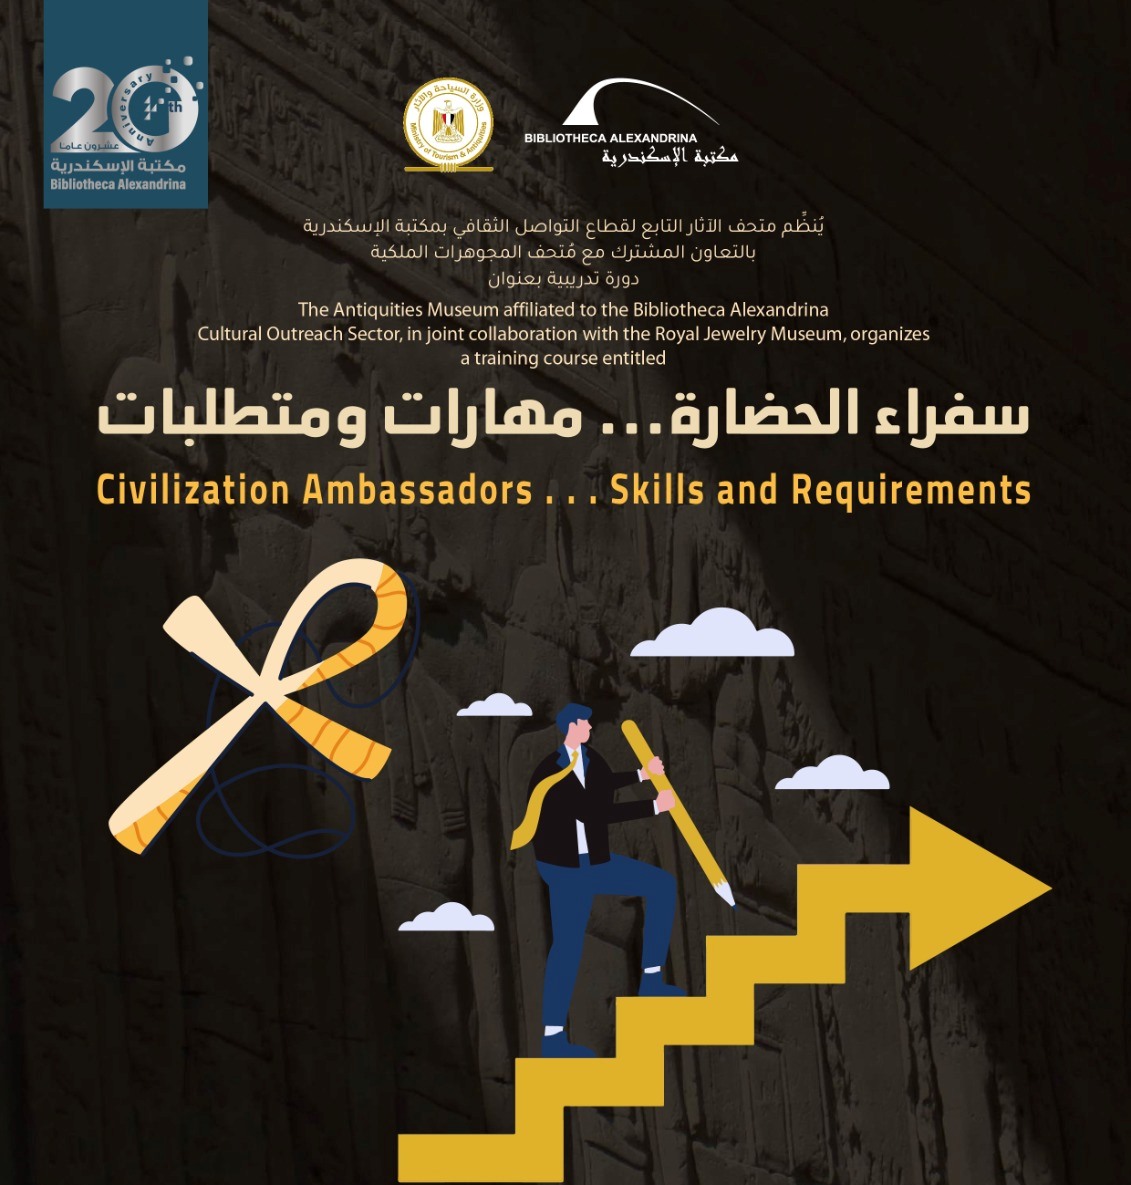 دورة تدريبية بعنوان سفراء الحضارة مهارات ومتطلبات في مكتبة الإسكندرية
